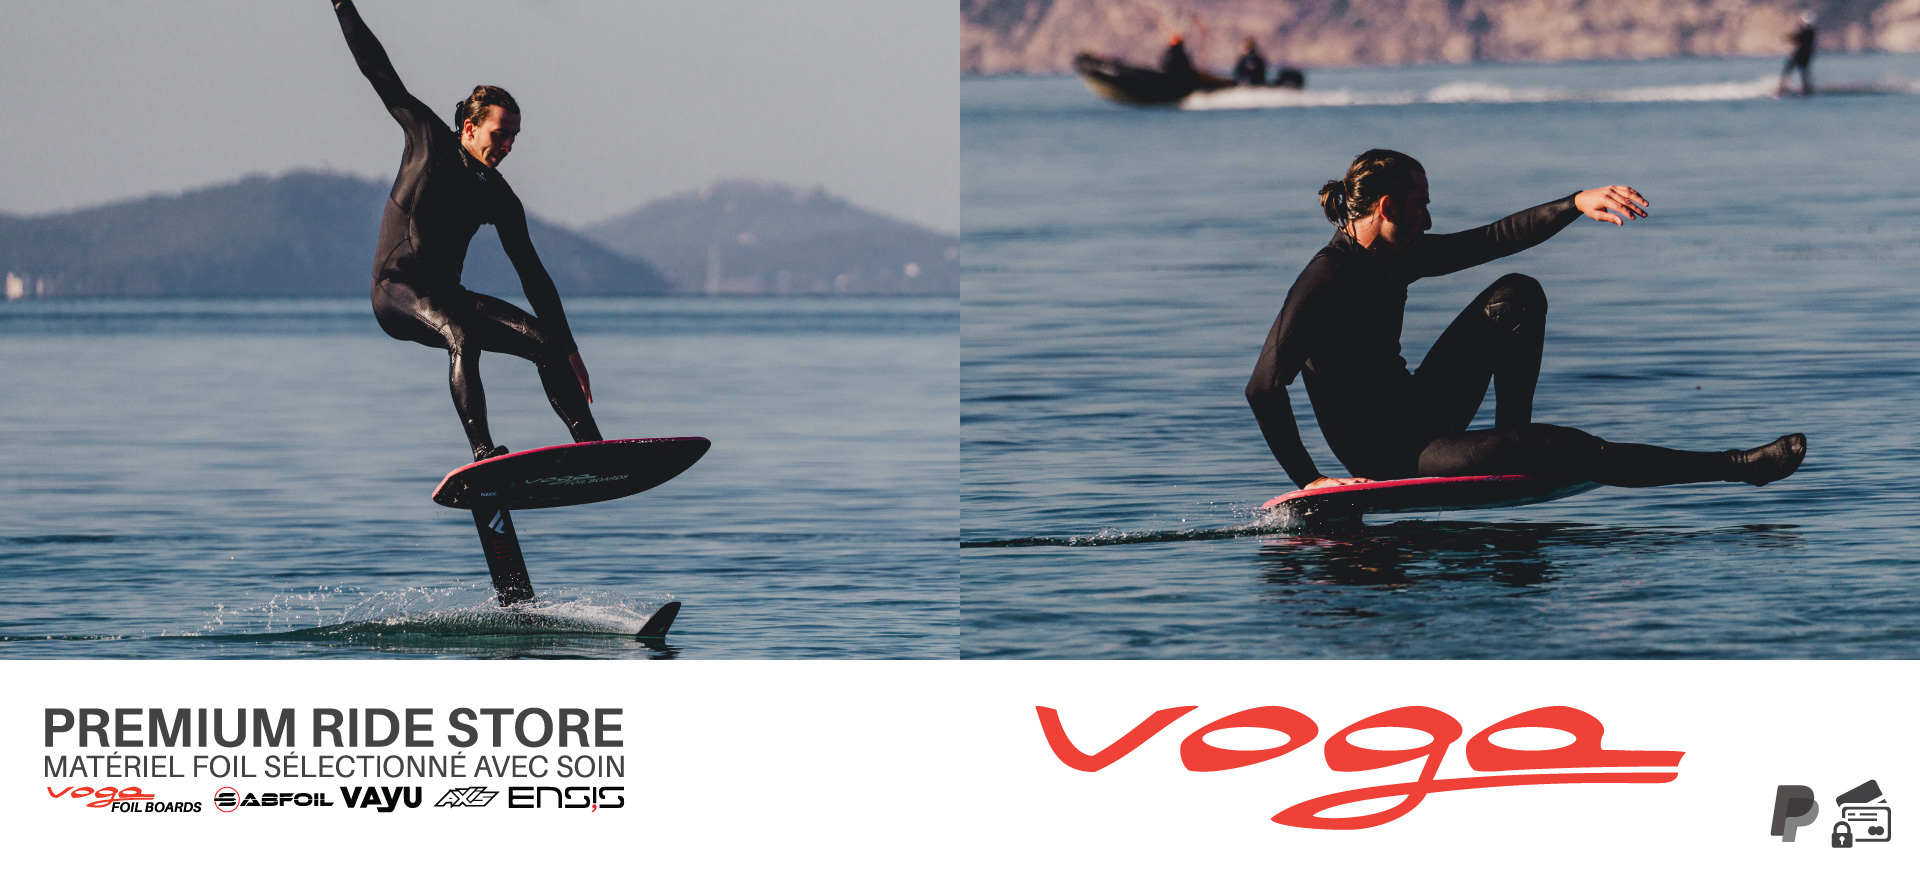 Voga Premium Ride Store pump foil boards pour le dock foil voga marine